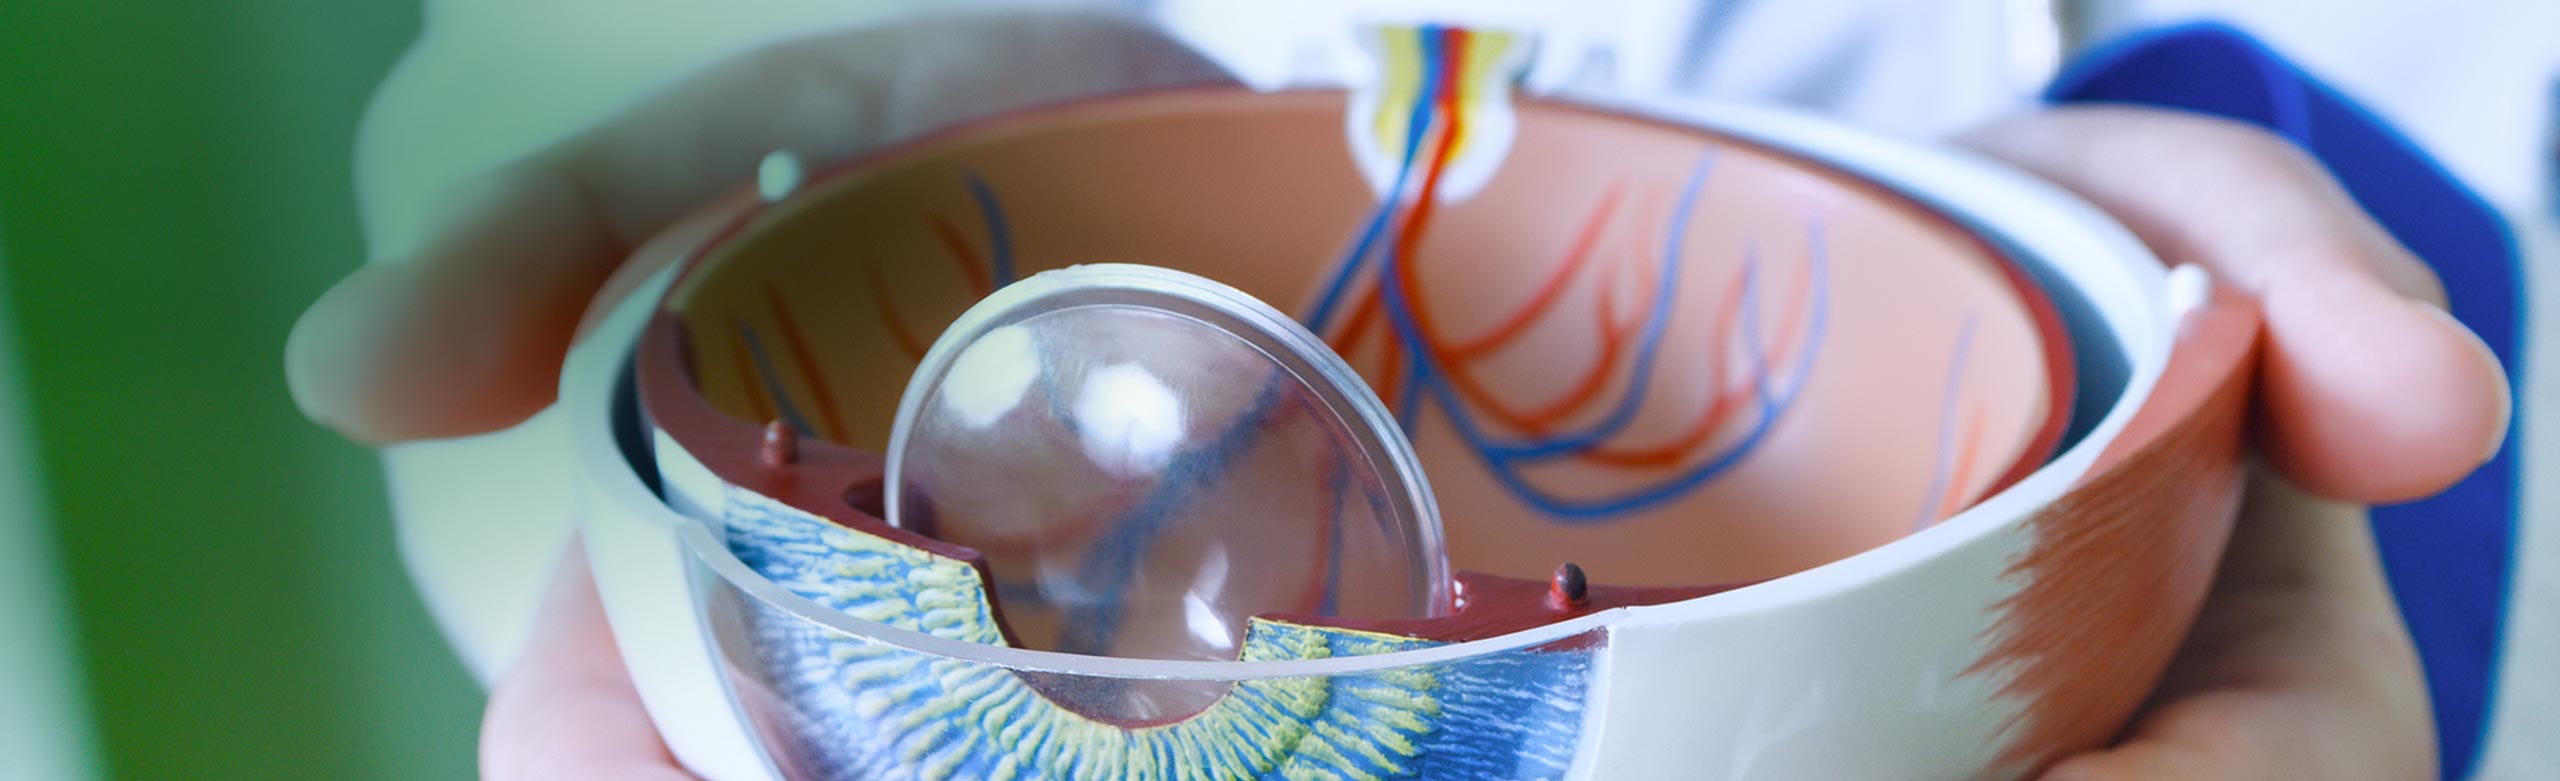 Imagen de unas manos sujetando un modelo anatómico de un ojo de plástico.